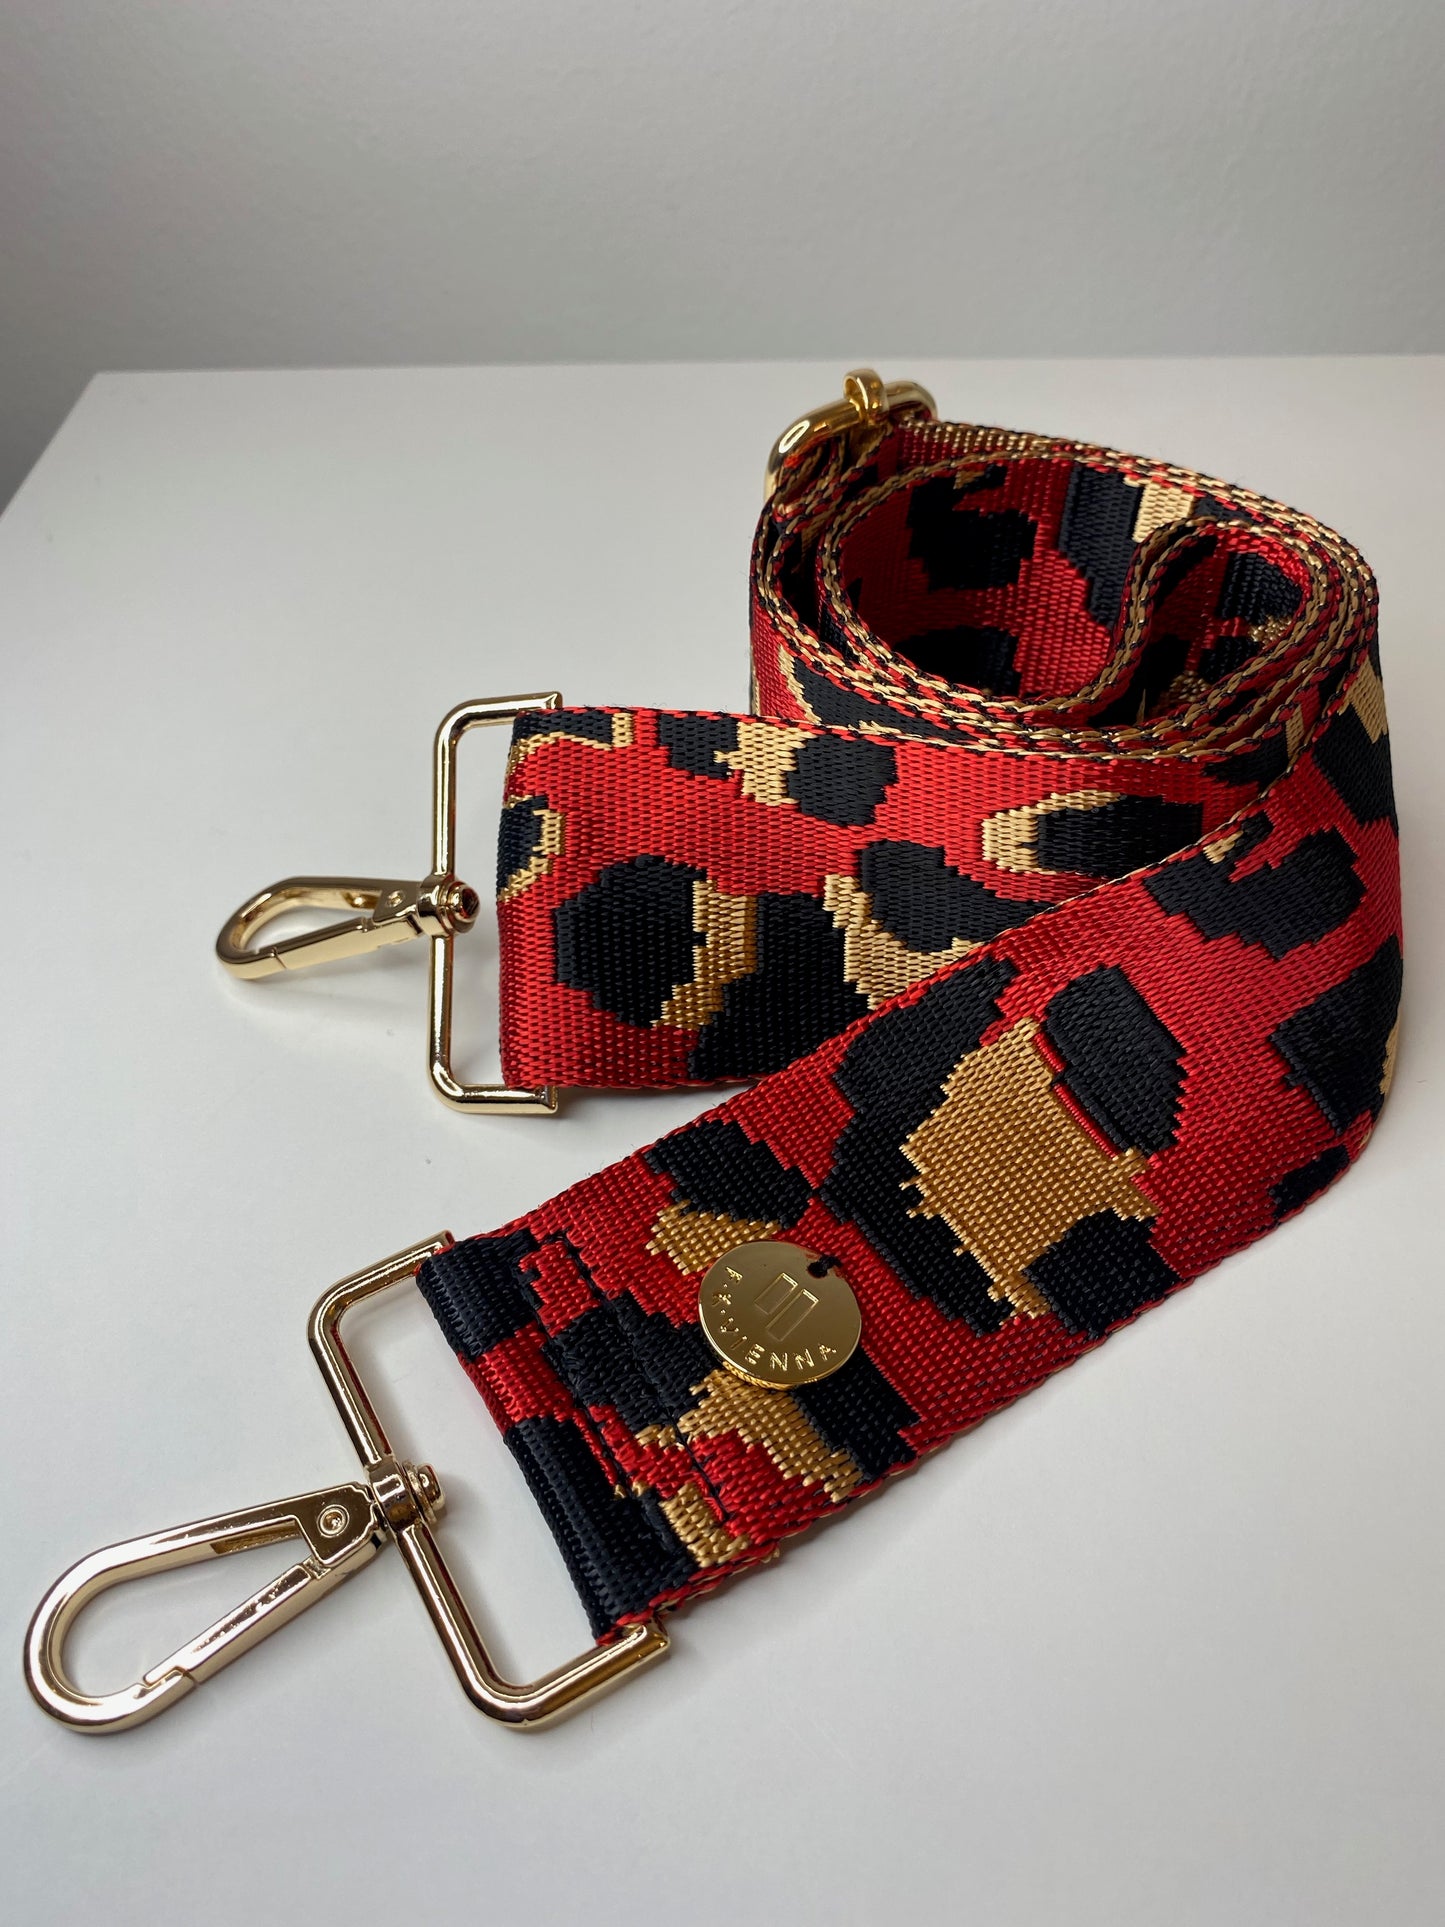 Shoulder Strap Bag Leopard Red / Gold Hardware